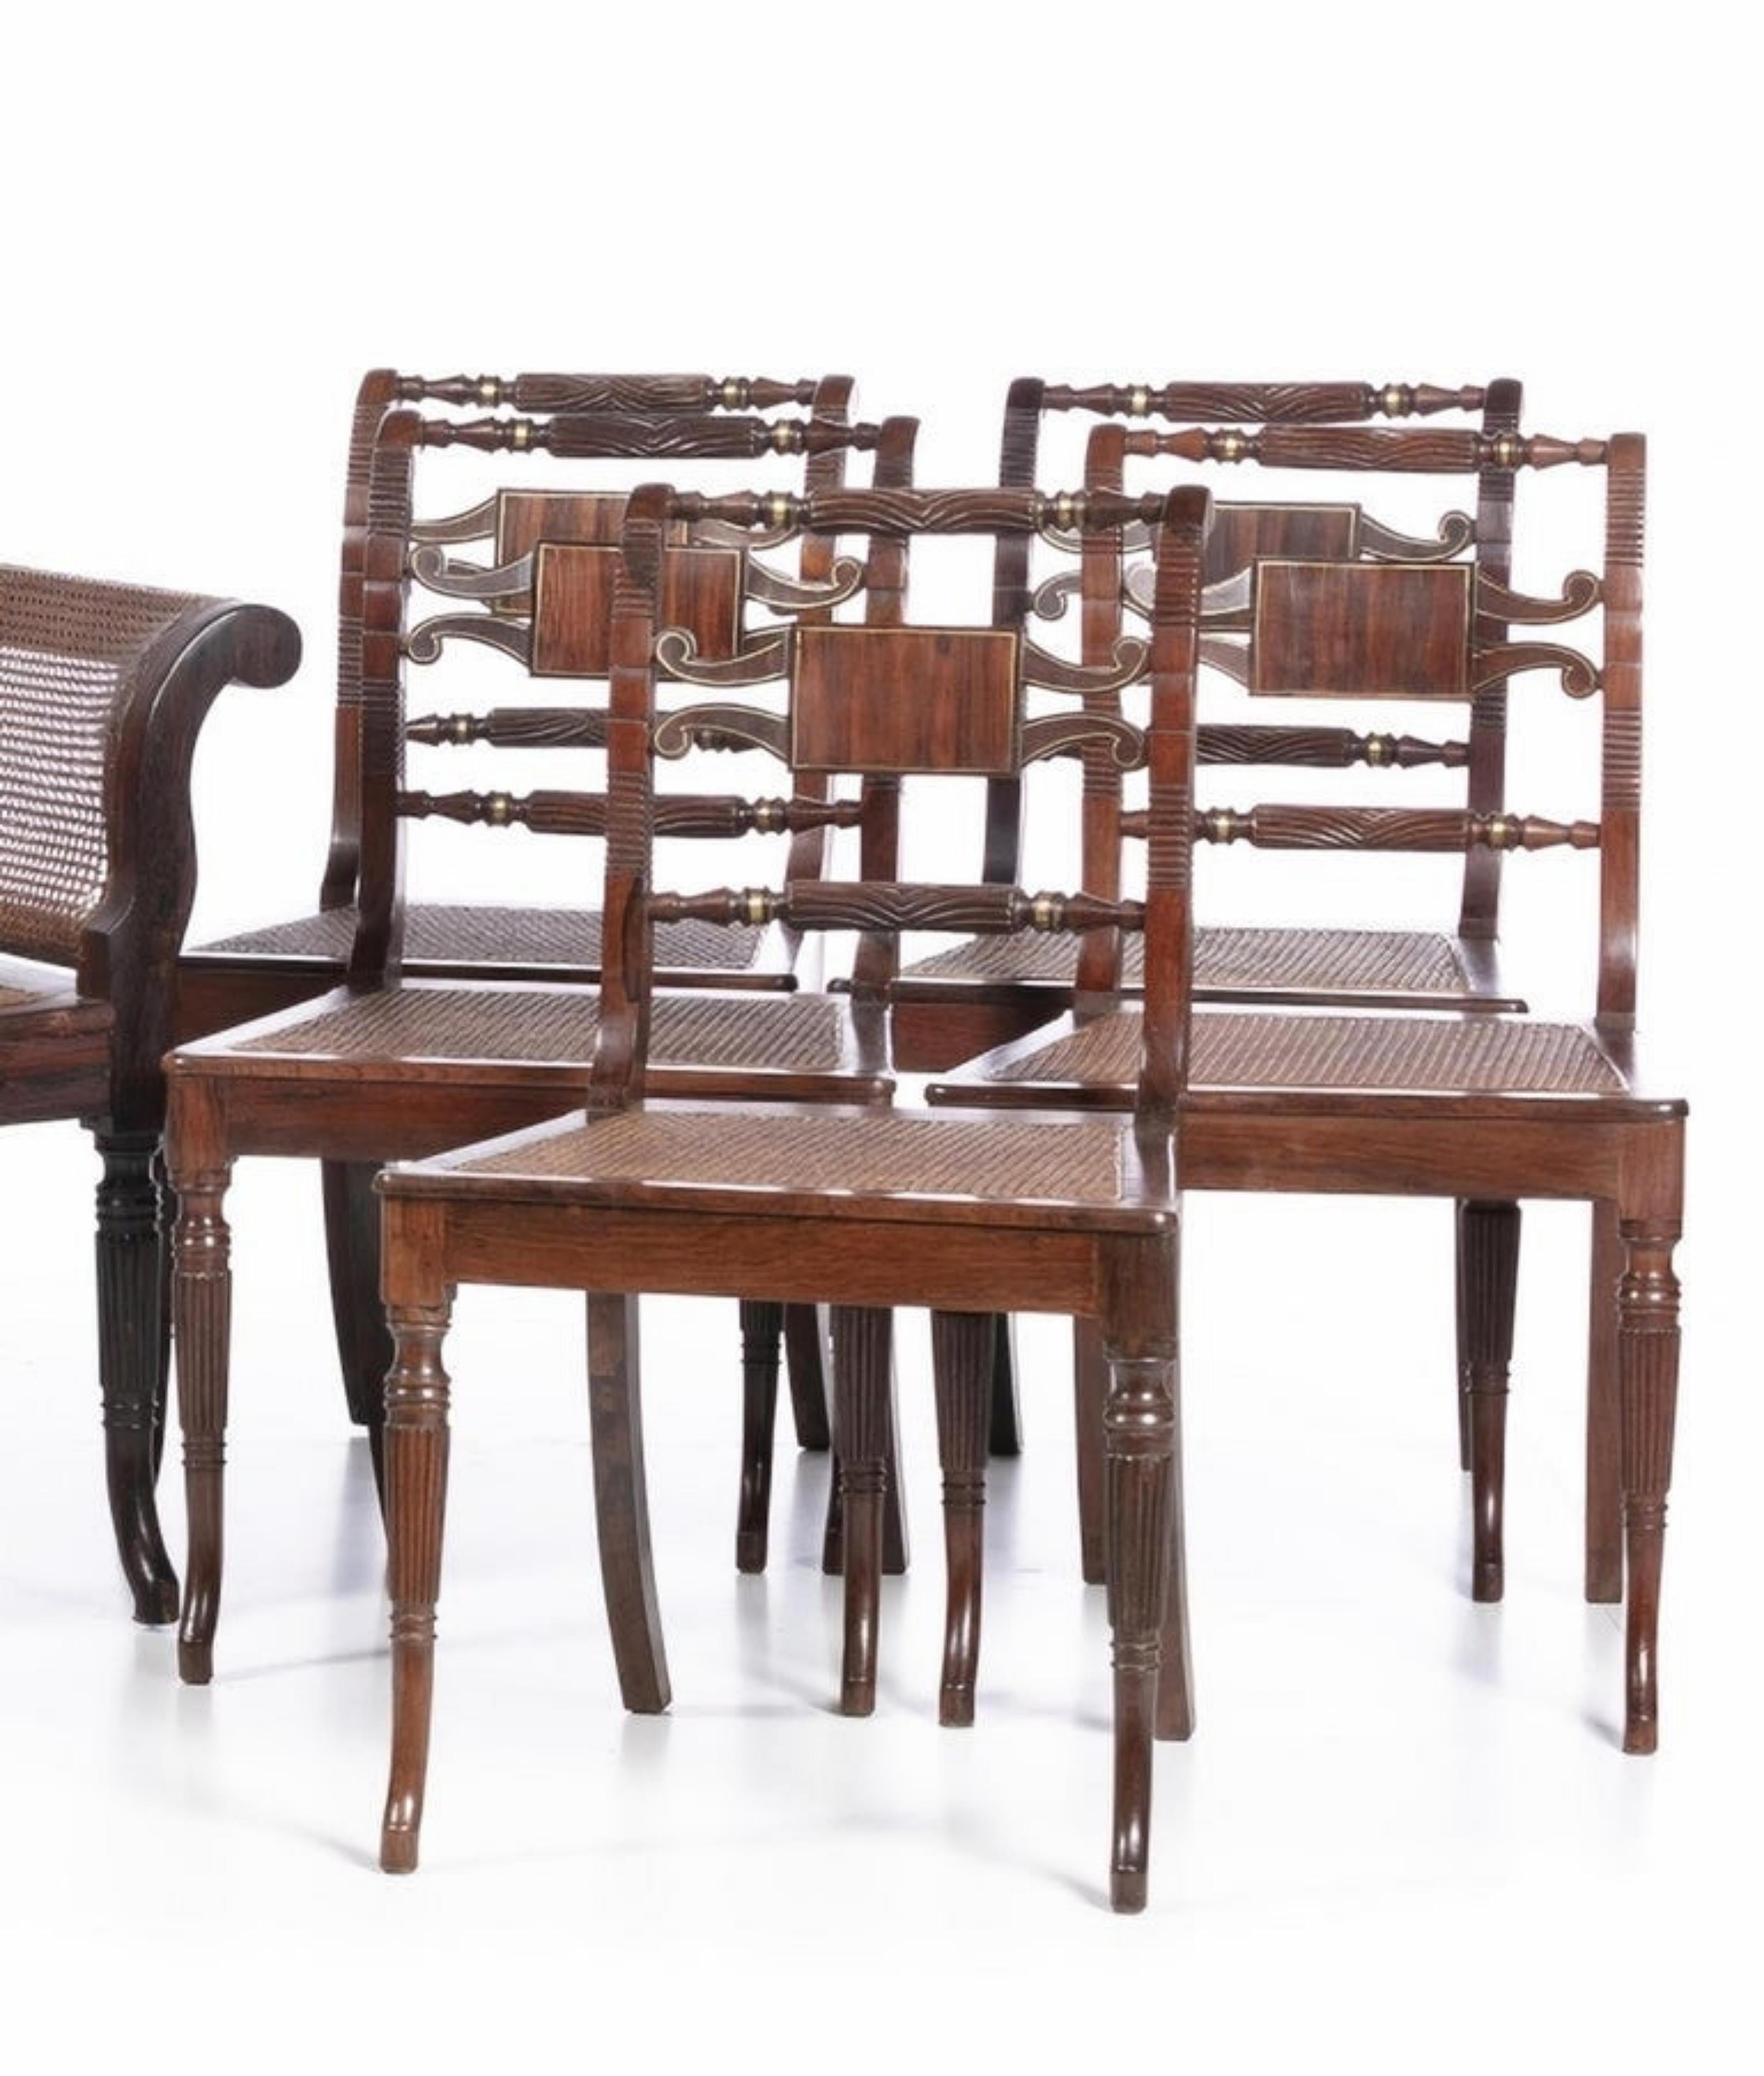 Canape et ensemble de 5 chaises
Régence
A partir du 19ème siècle,
En bois de palissandre, avec des bras courbés et des applications en métal.
Sièges en paille.
Dimensions.. : (canapé) 87 x 175 x 83 cm.
Dimensions : (chaise) 85 x 50 x 40 cm.